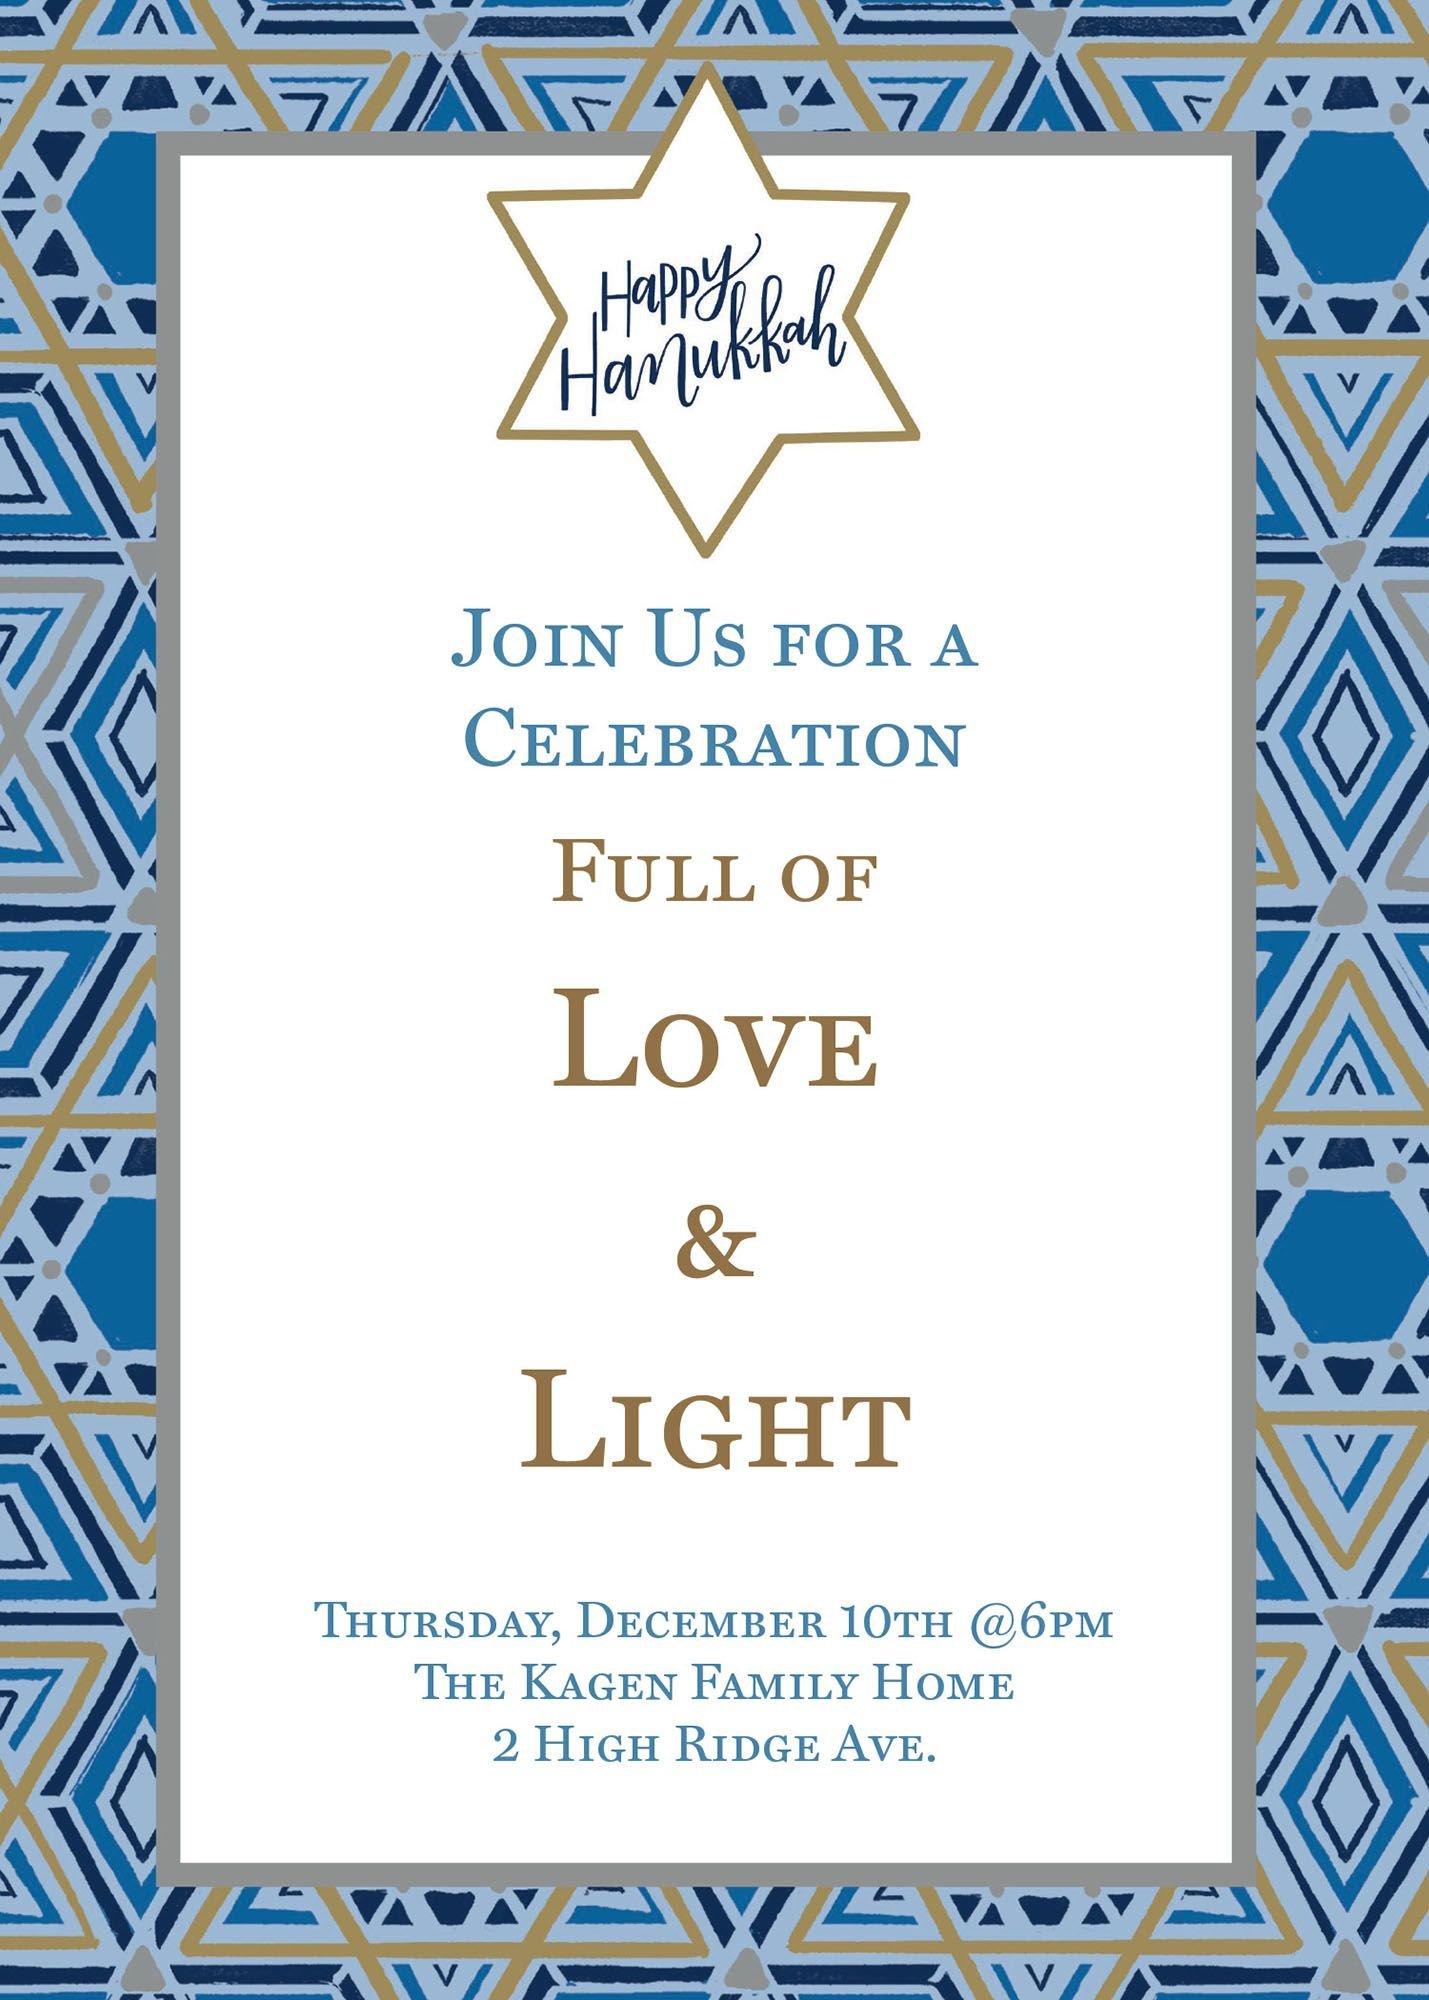 Custom Festival of Lights Hanukkah Invitations